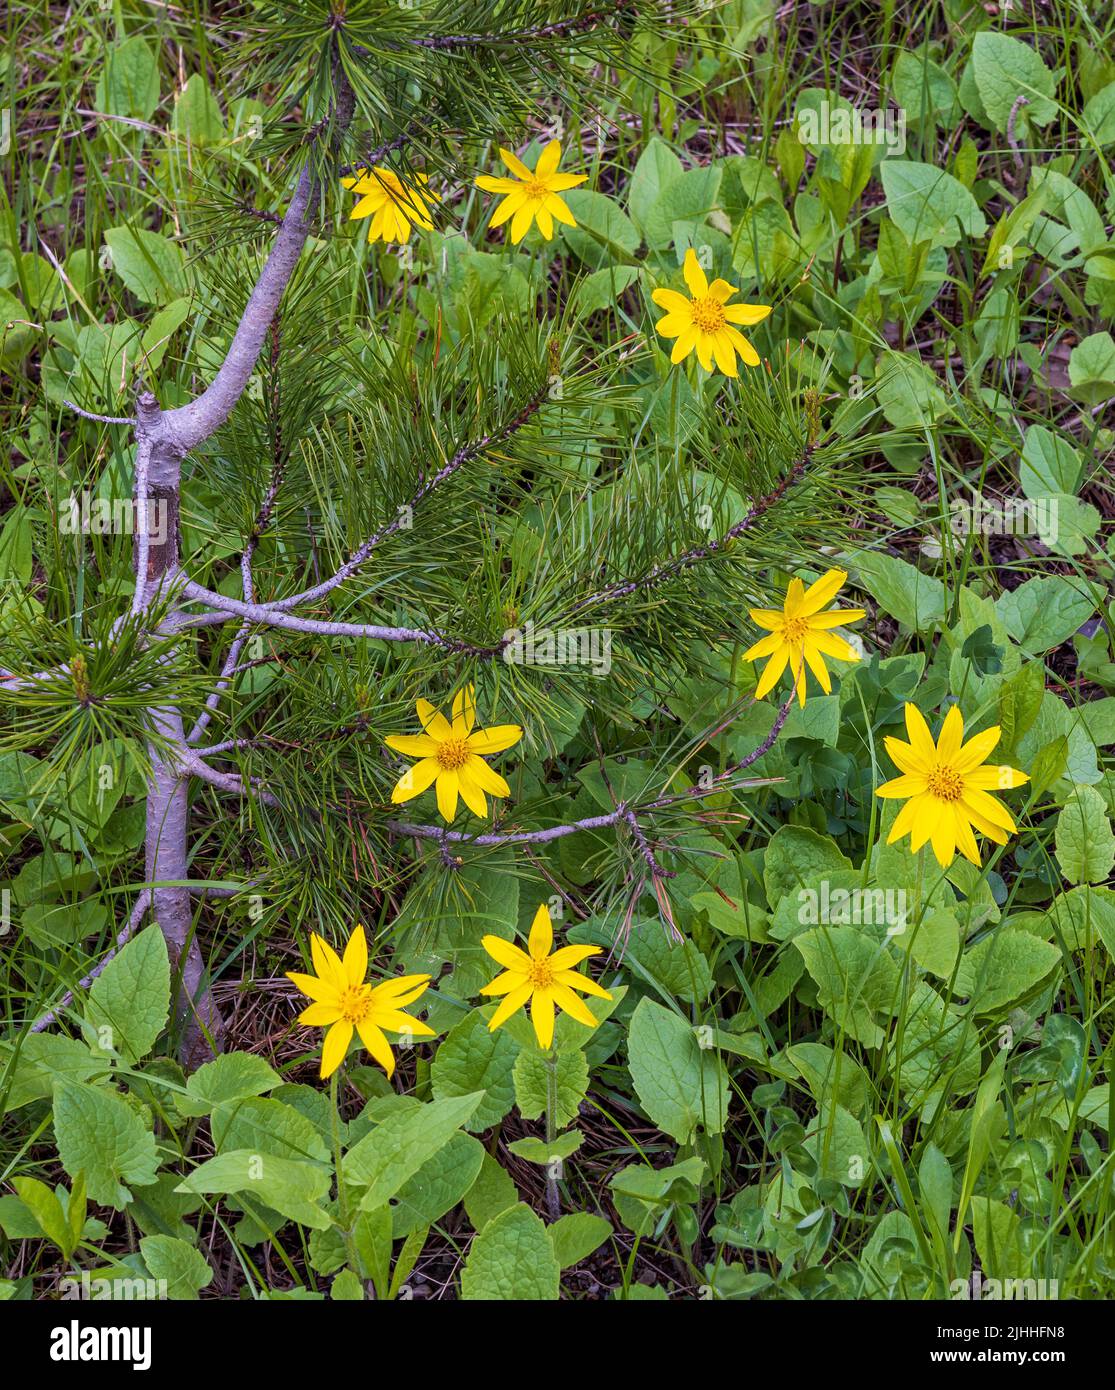 Arnicas (Arnica cordifolia), jaune vif, a marqué le paysage autour d'un petit pin de Lodgepole dans la région de signal Mountain, dans le parc national de Grand Teton, en Wyoming. Banque D'Images